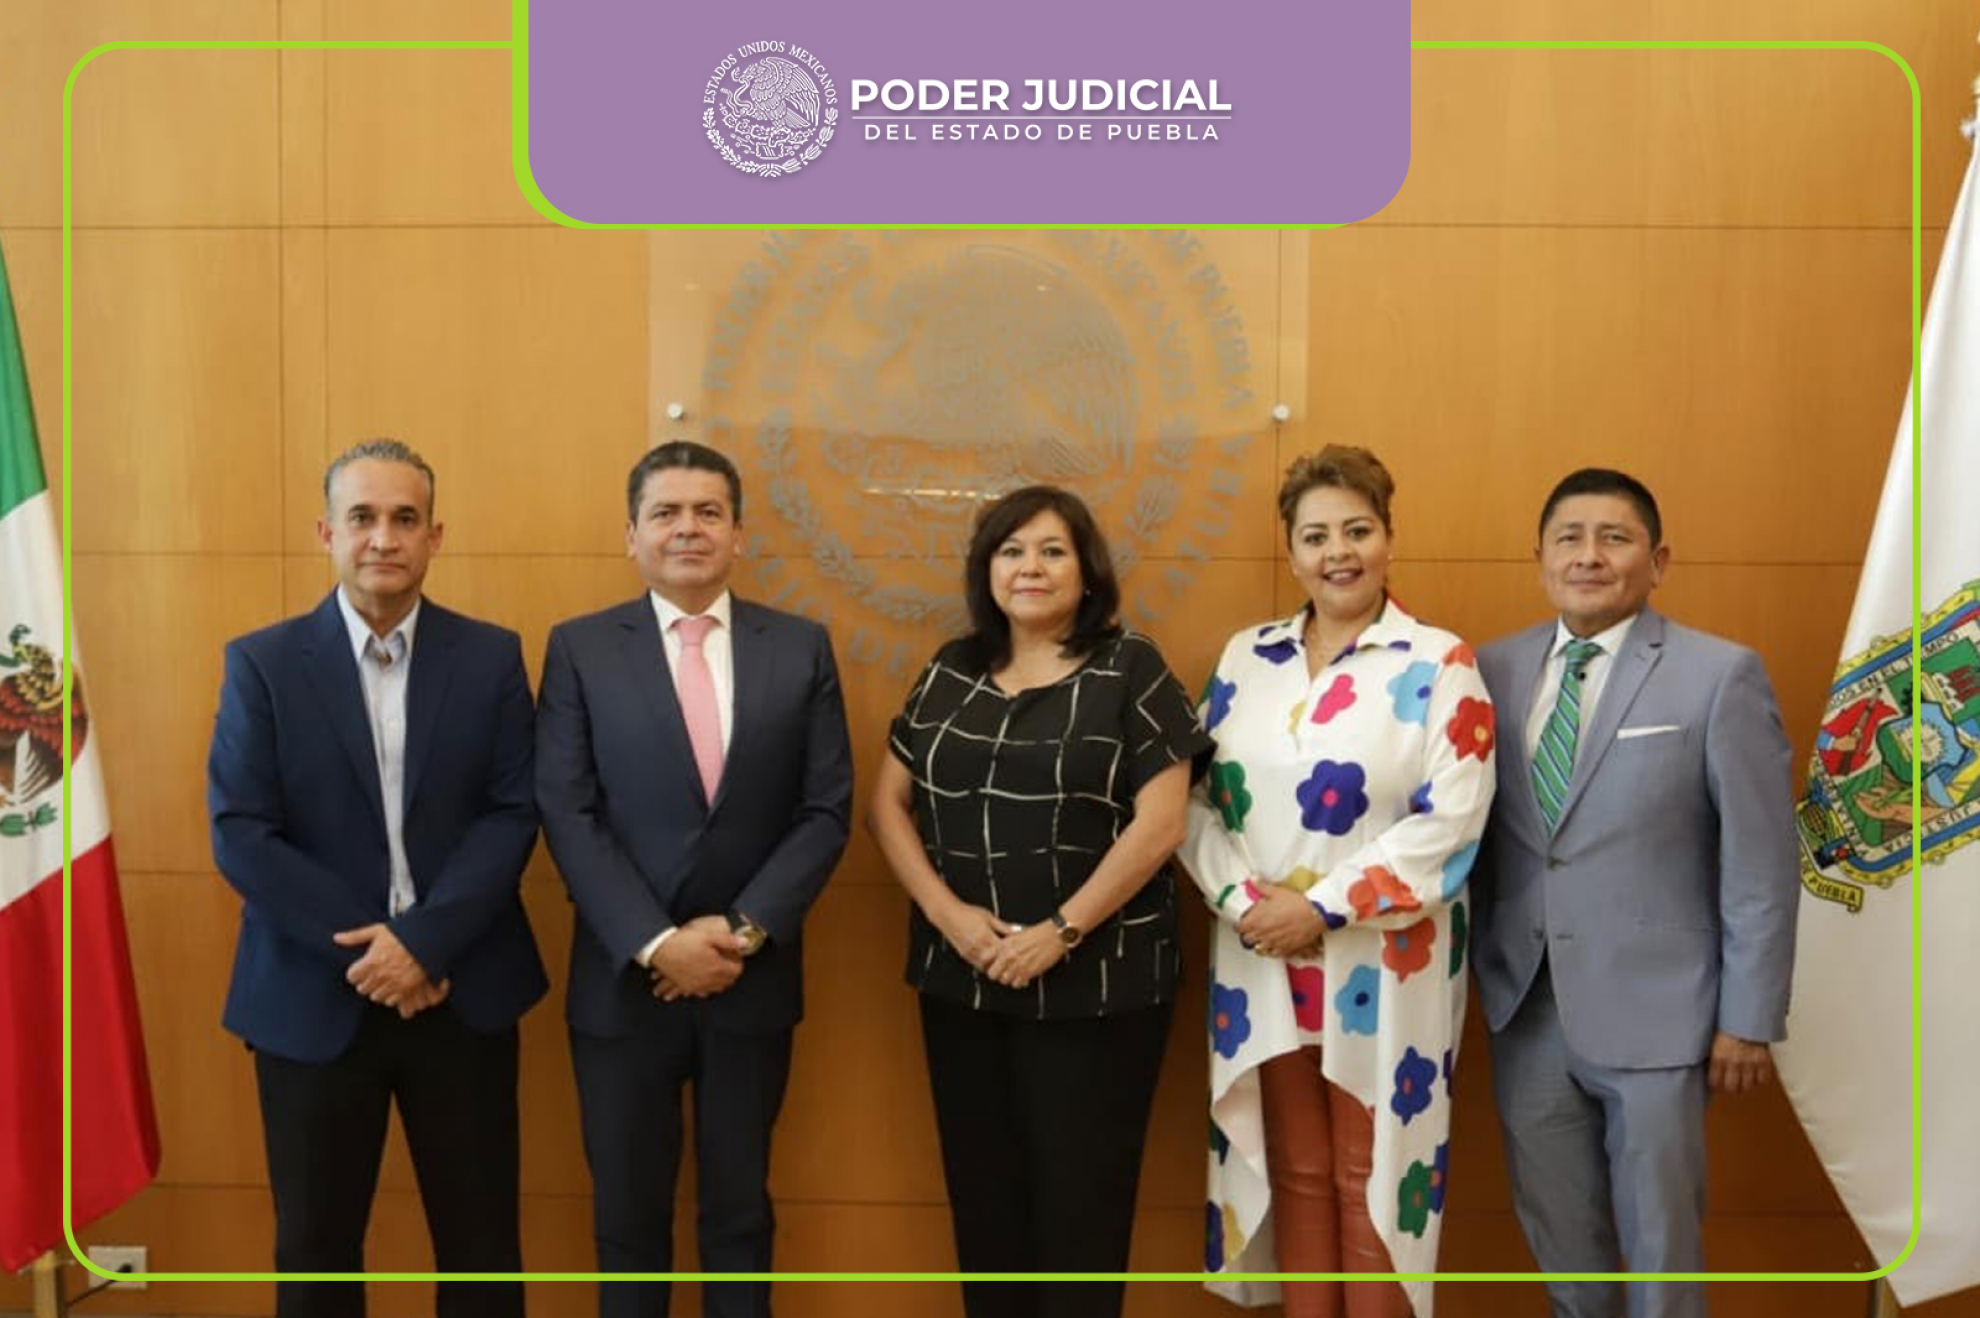 El Poder Judicial del Estado de Puebla Reestructura sus Salas Civiles, Penales y Especializadas.